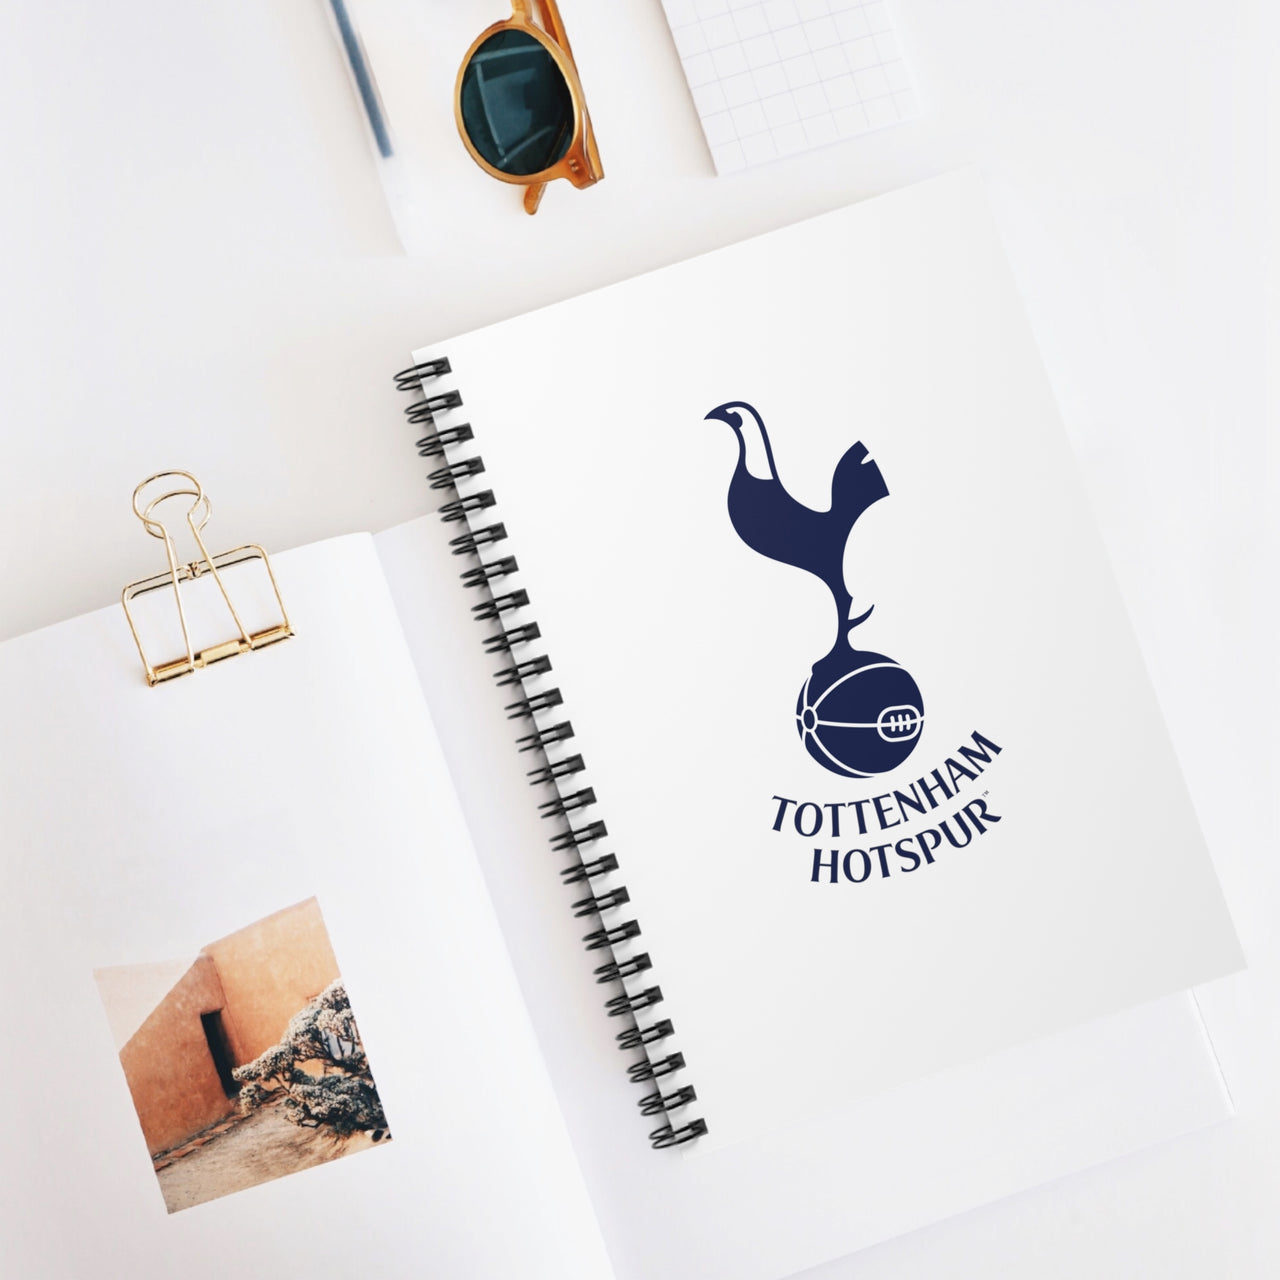 Tottenham Hotspurs Spiral Notebook - Ruled Line